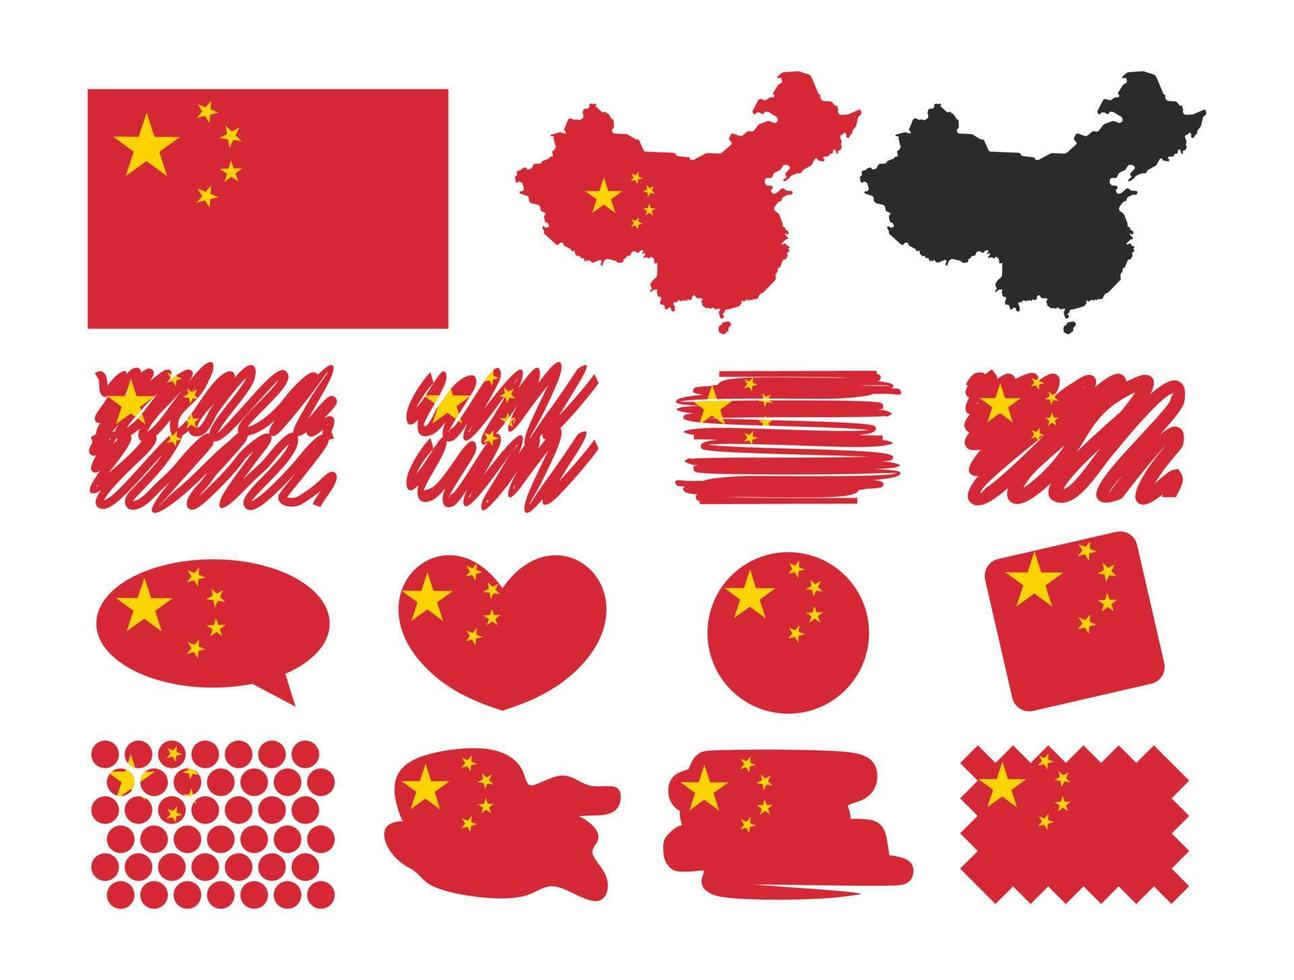 Vektor der Umrisssilhouette des Landes China mit Flaggensatz isoliert auf weißem Hintergrund. Sammlung von chinesischen Flaggensymbolen mit Quadrat, Kreis, Herz, Sprechsymbol, Punkten und Kartenformen. handgezeichneter Stil.